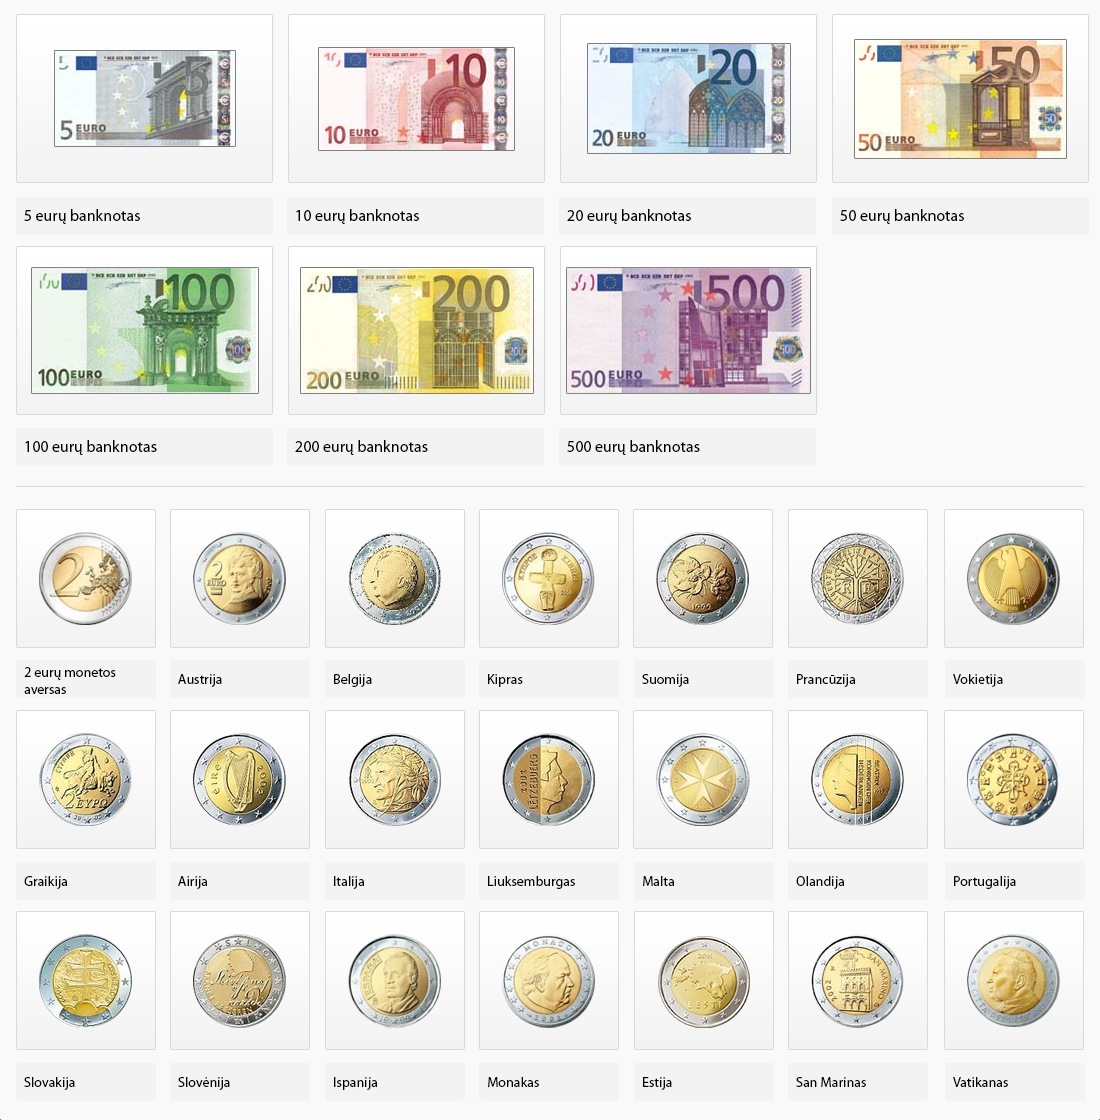 Banknotai visose šalyse yra vienodi, o monetų aversa kiekviena šalis leidžia pagal savą dizainą.